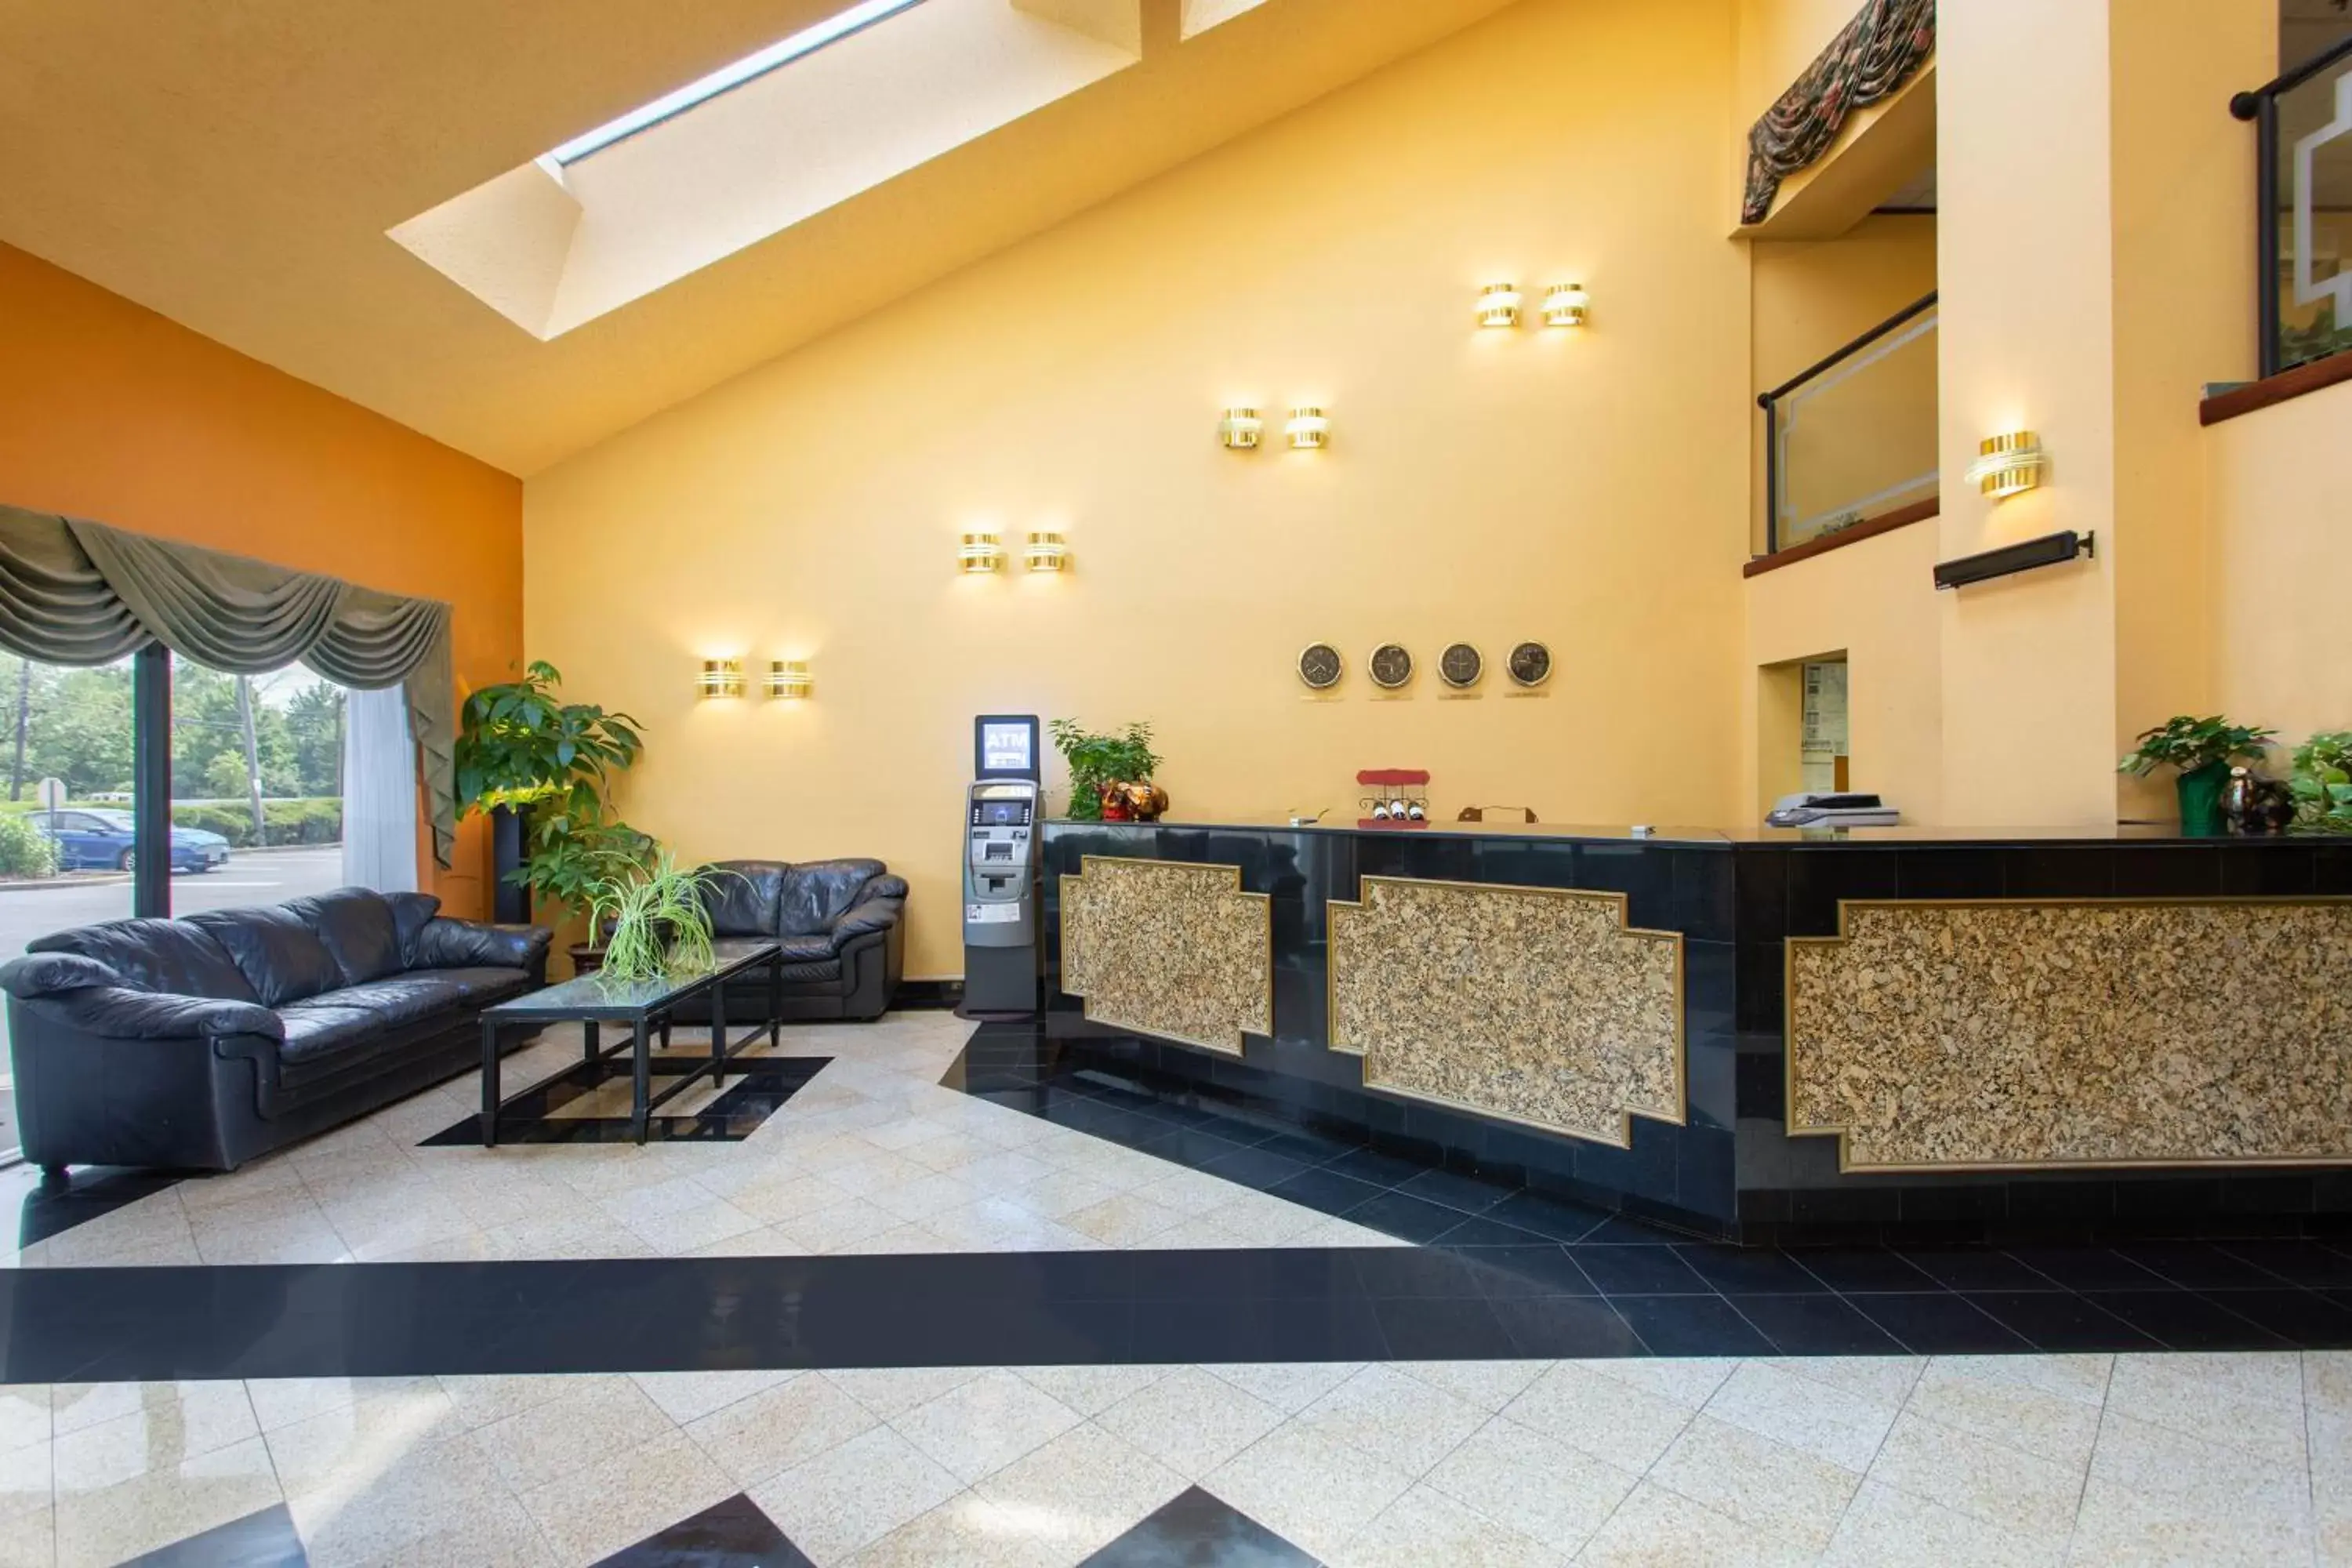 Lobby or reception, Lobby/Reception in Days Inn by Wyndham Hillsborough